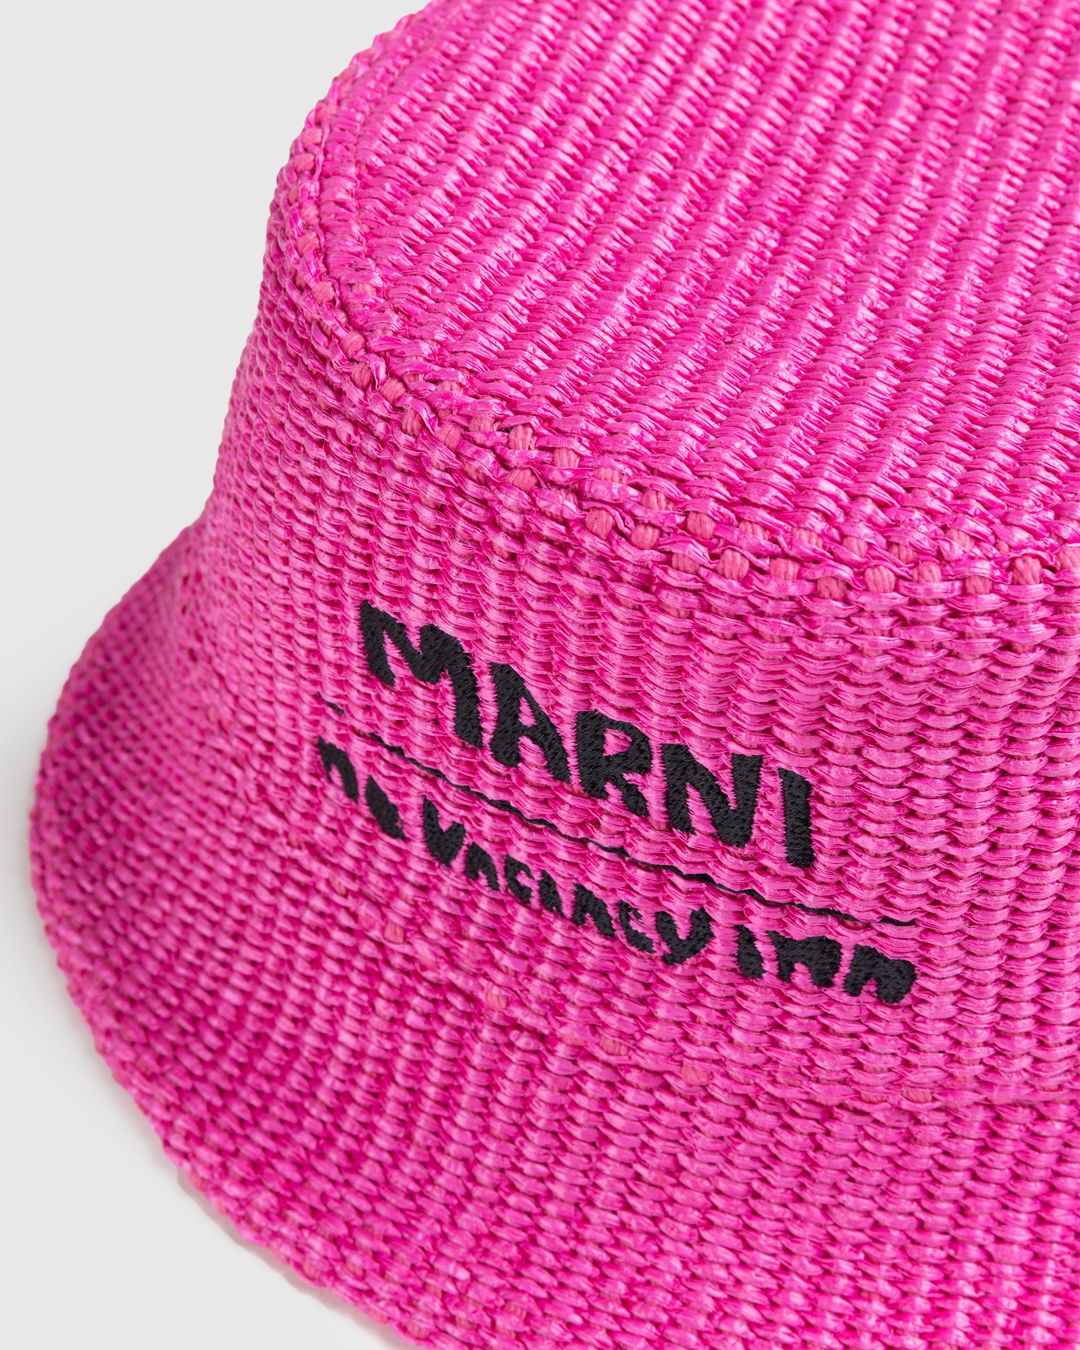 Marni x No Vacancy Inn – Raffia Bucket Hat Fuschia | Highsnobiety Shop